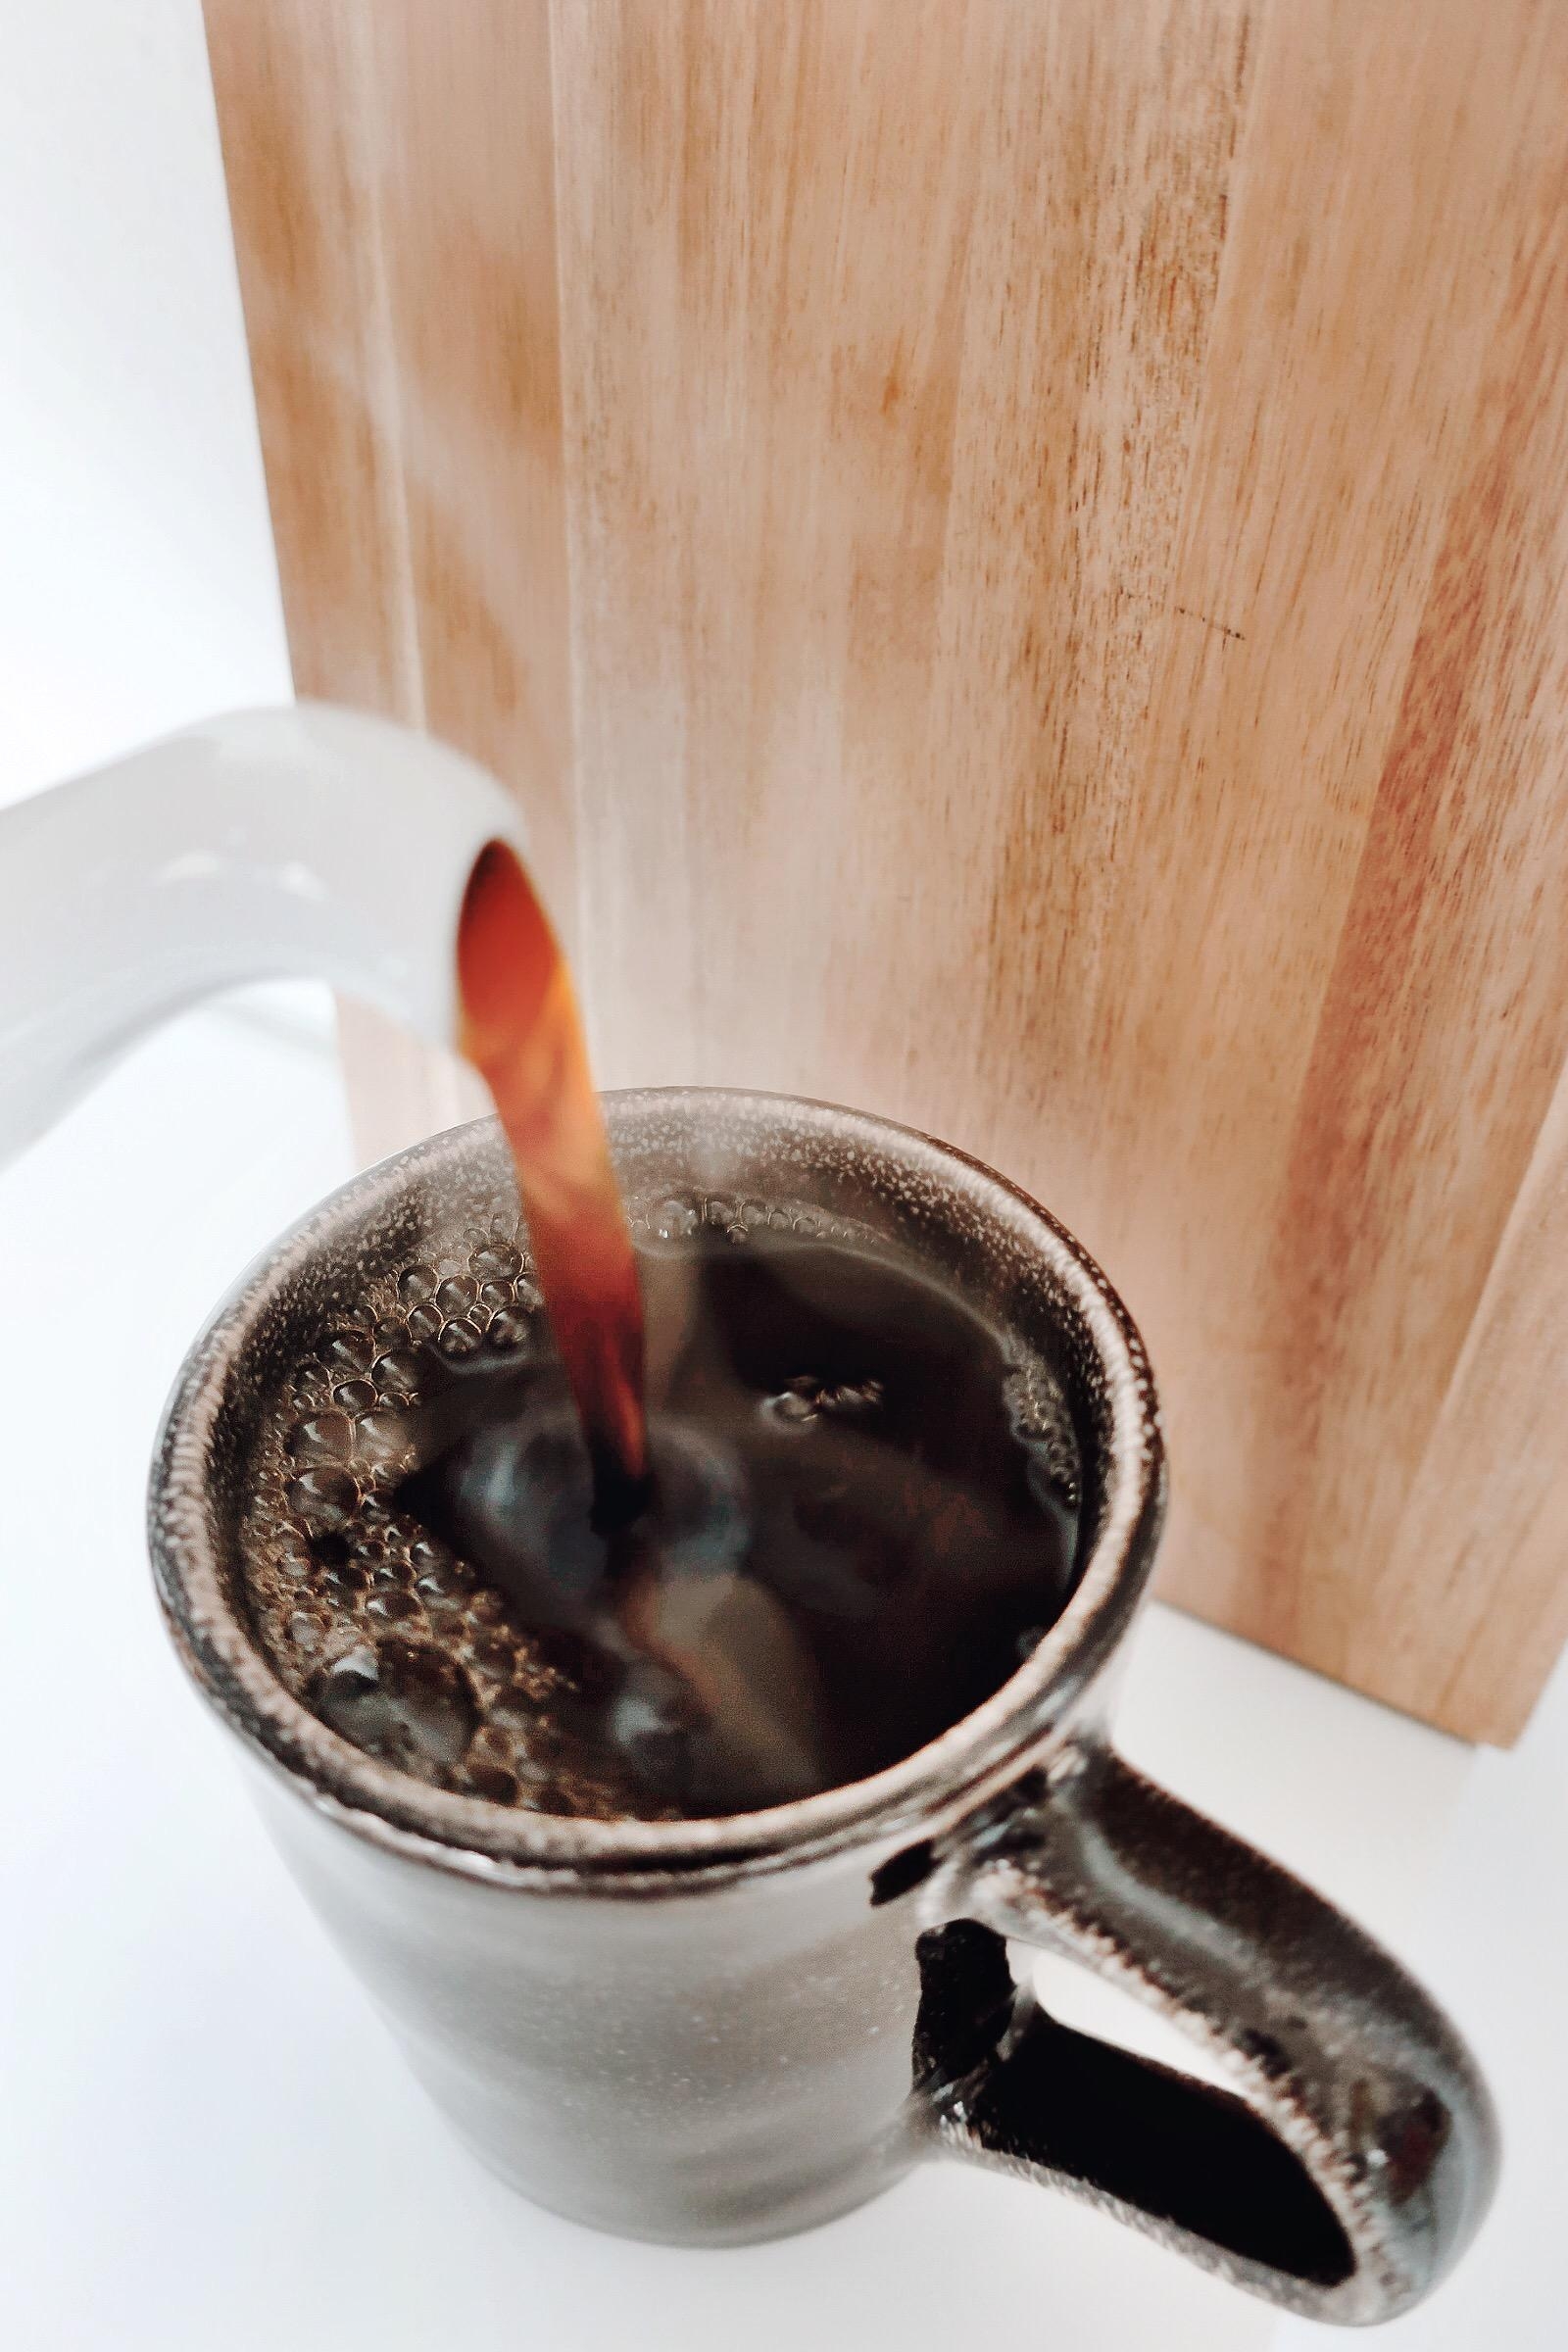 Fresh brewed coffee 💕 euch allen ein schönes Wochenende! #coffee #xmas #weekend #homestory #morning 